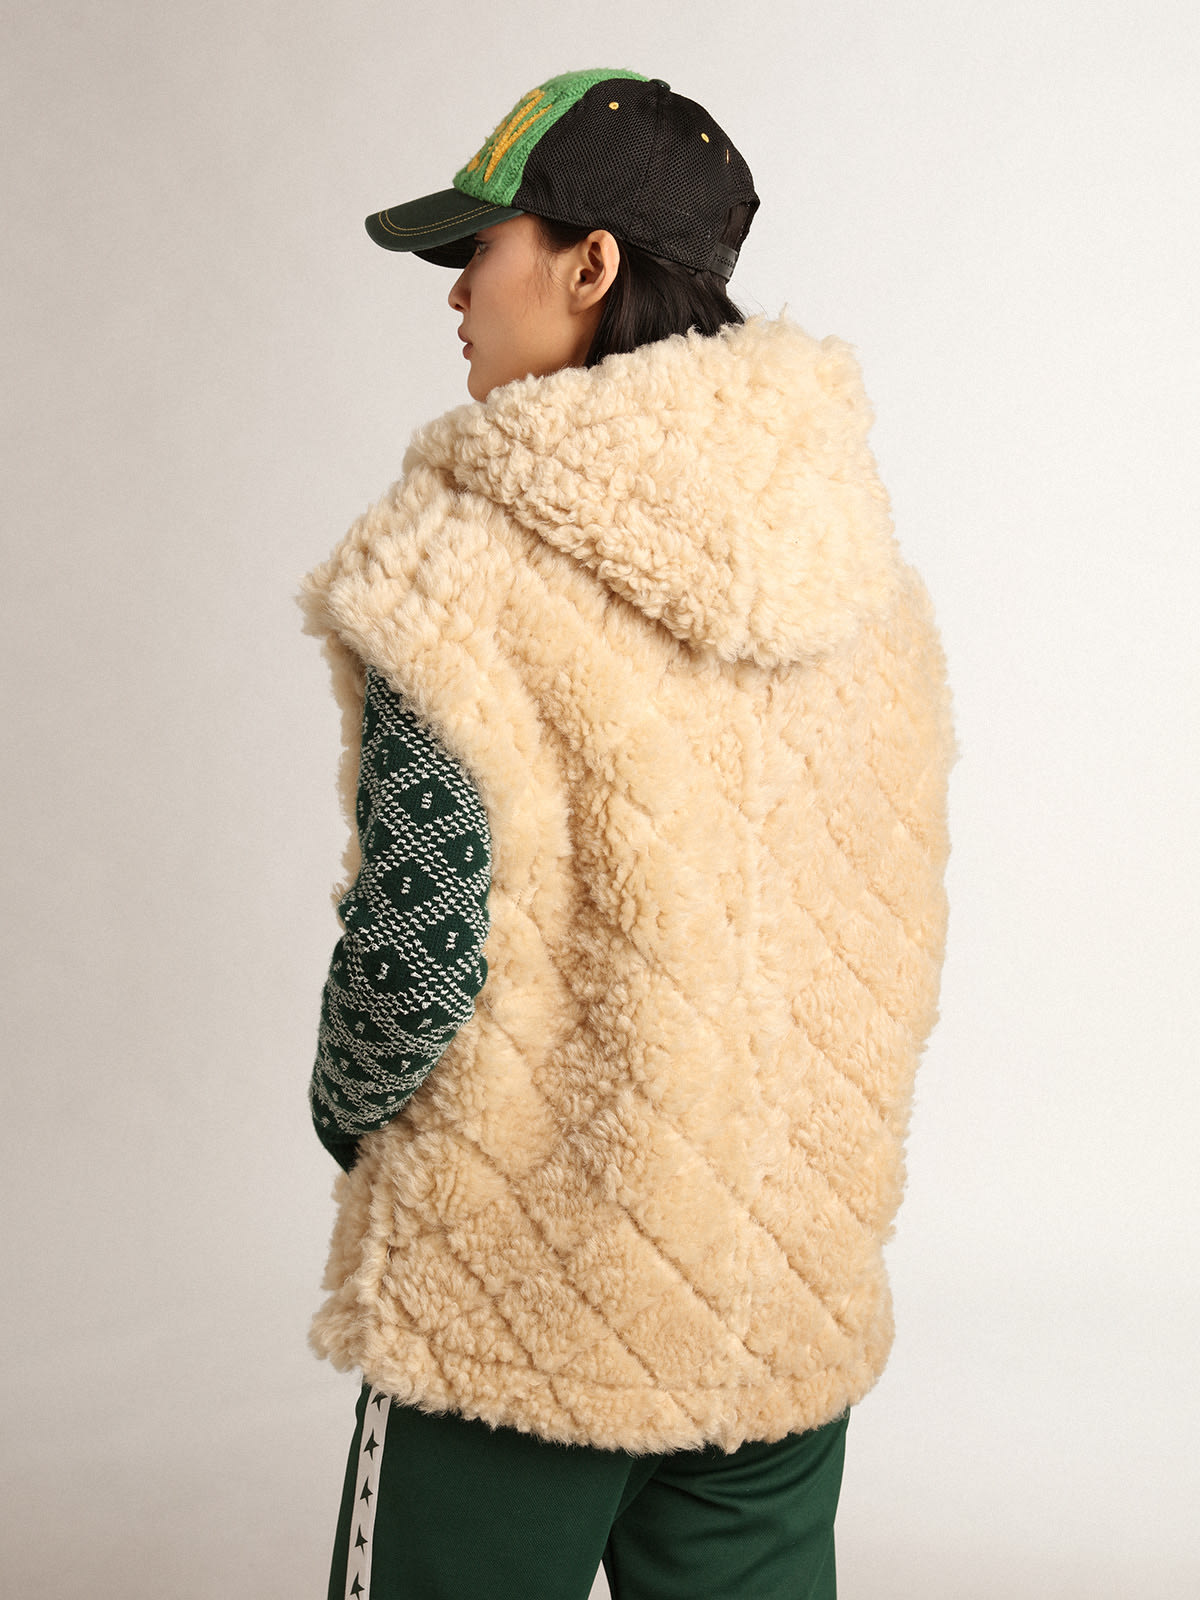 Golden Goose - Journey Collection reversible sheepskin vest in ecru in 